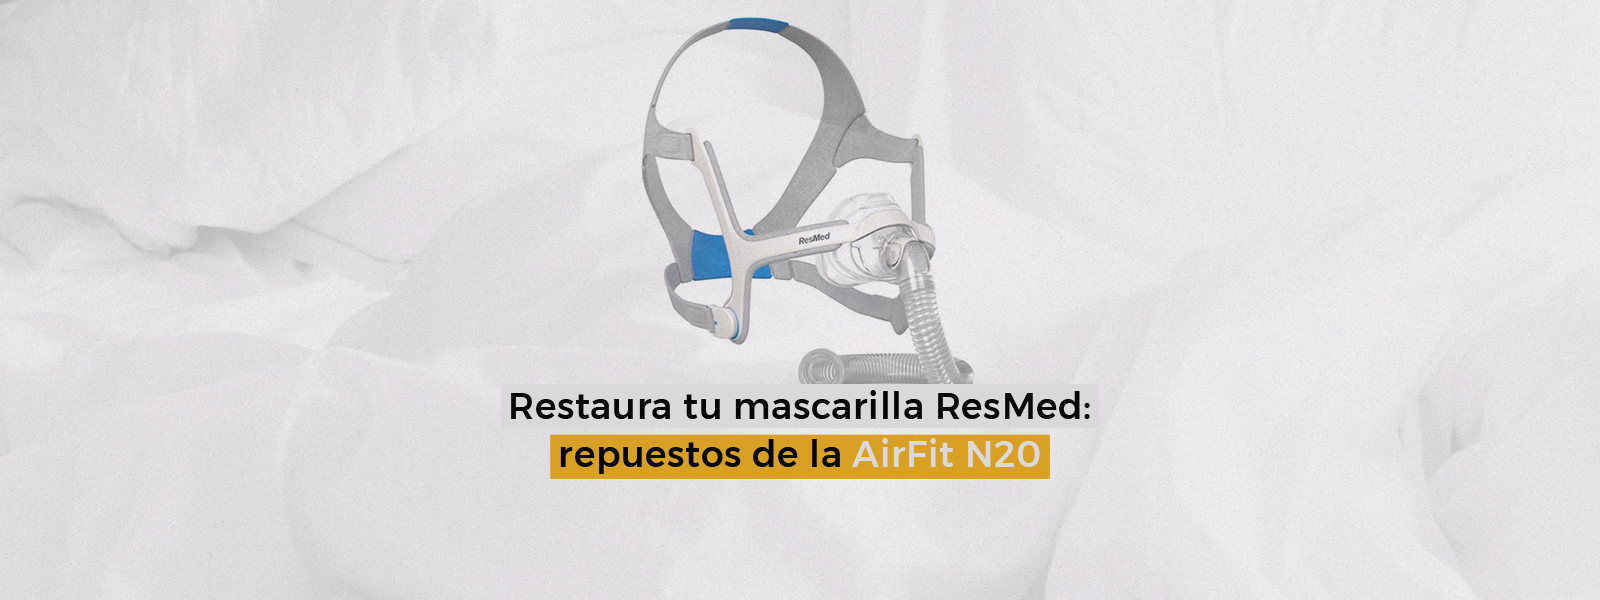 Restaura tu mascarilla ResMed: repuestos de la AirFit N20